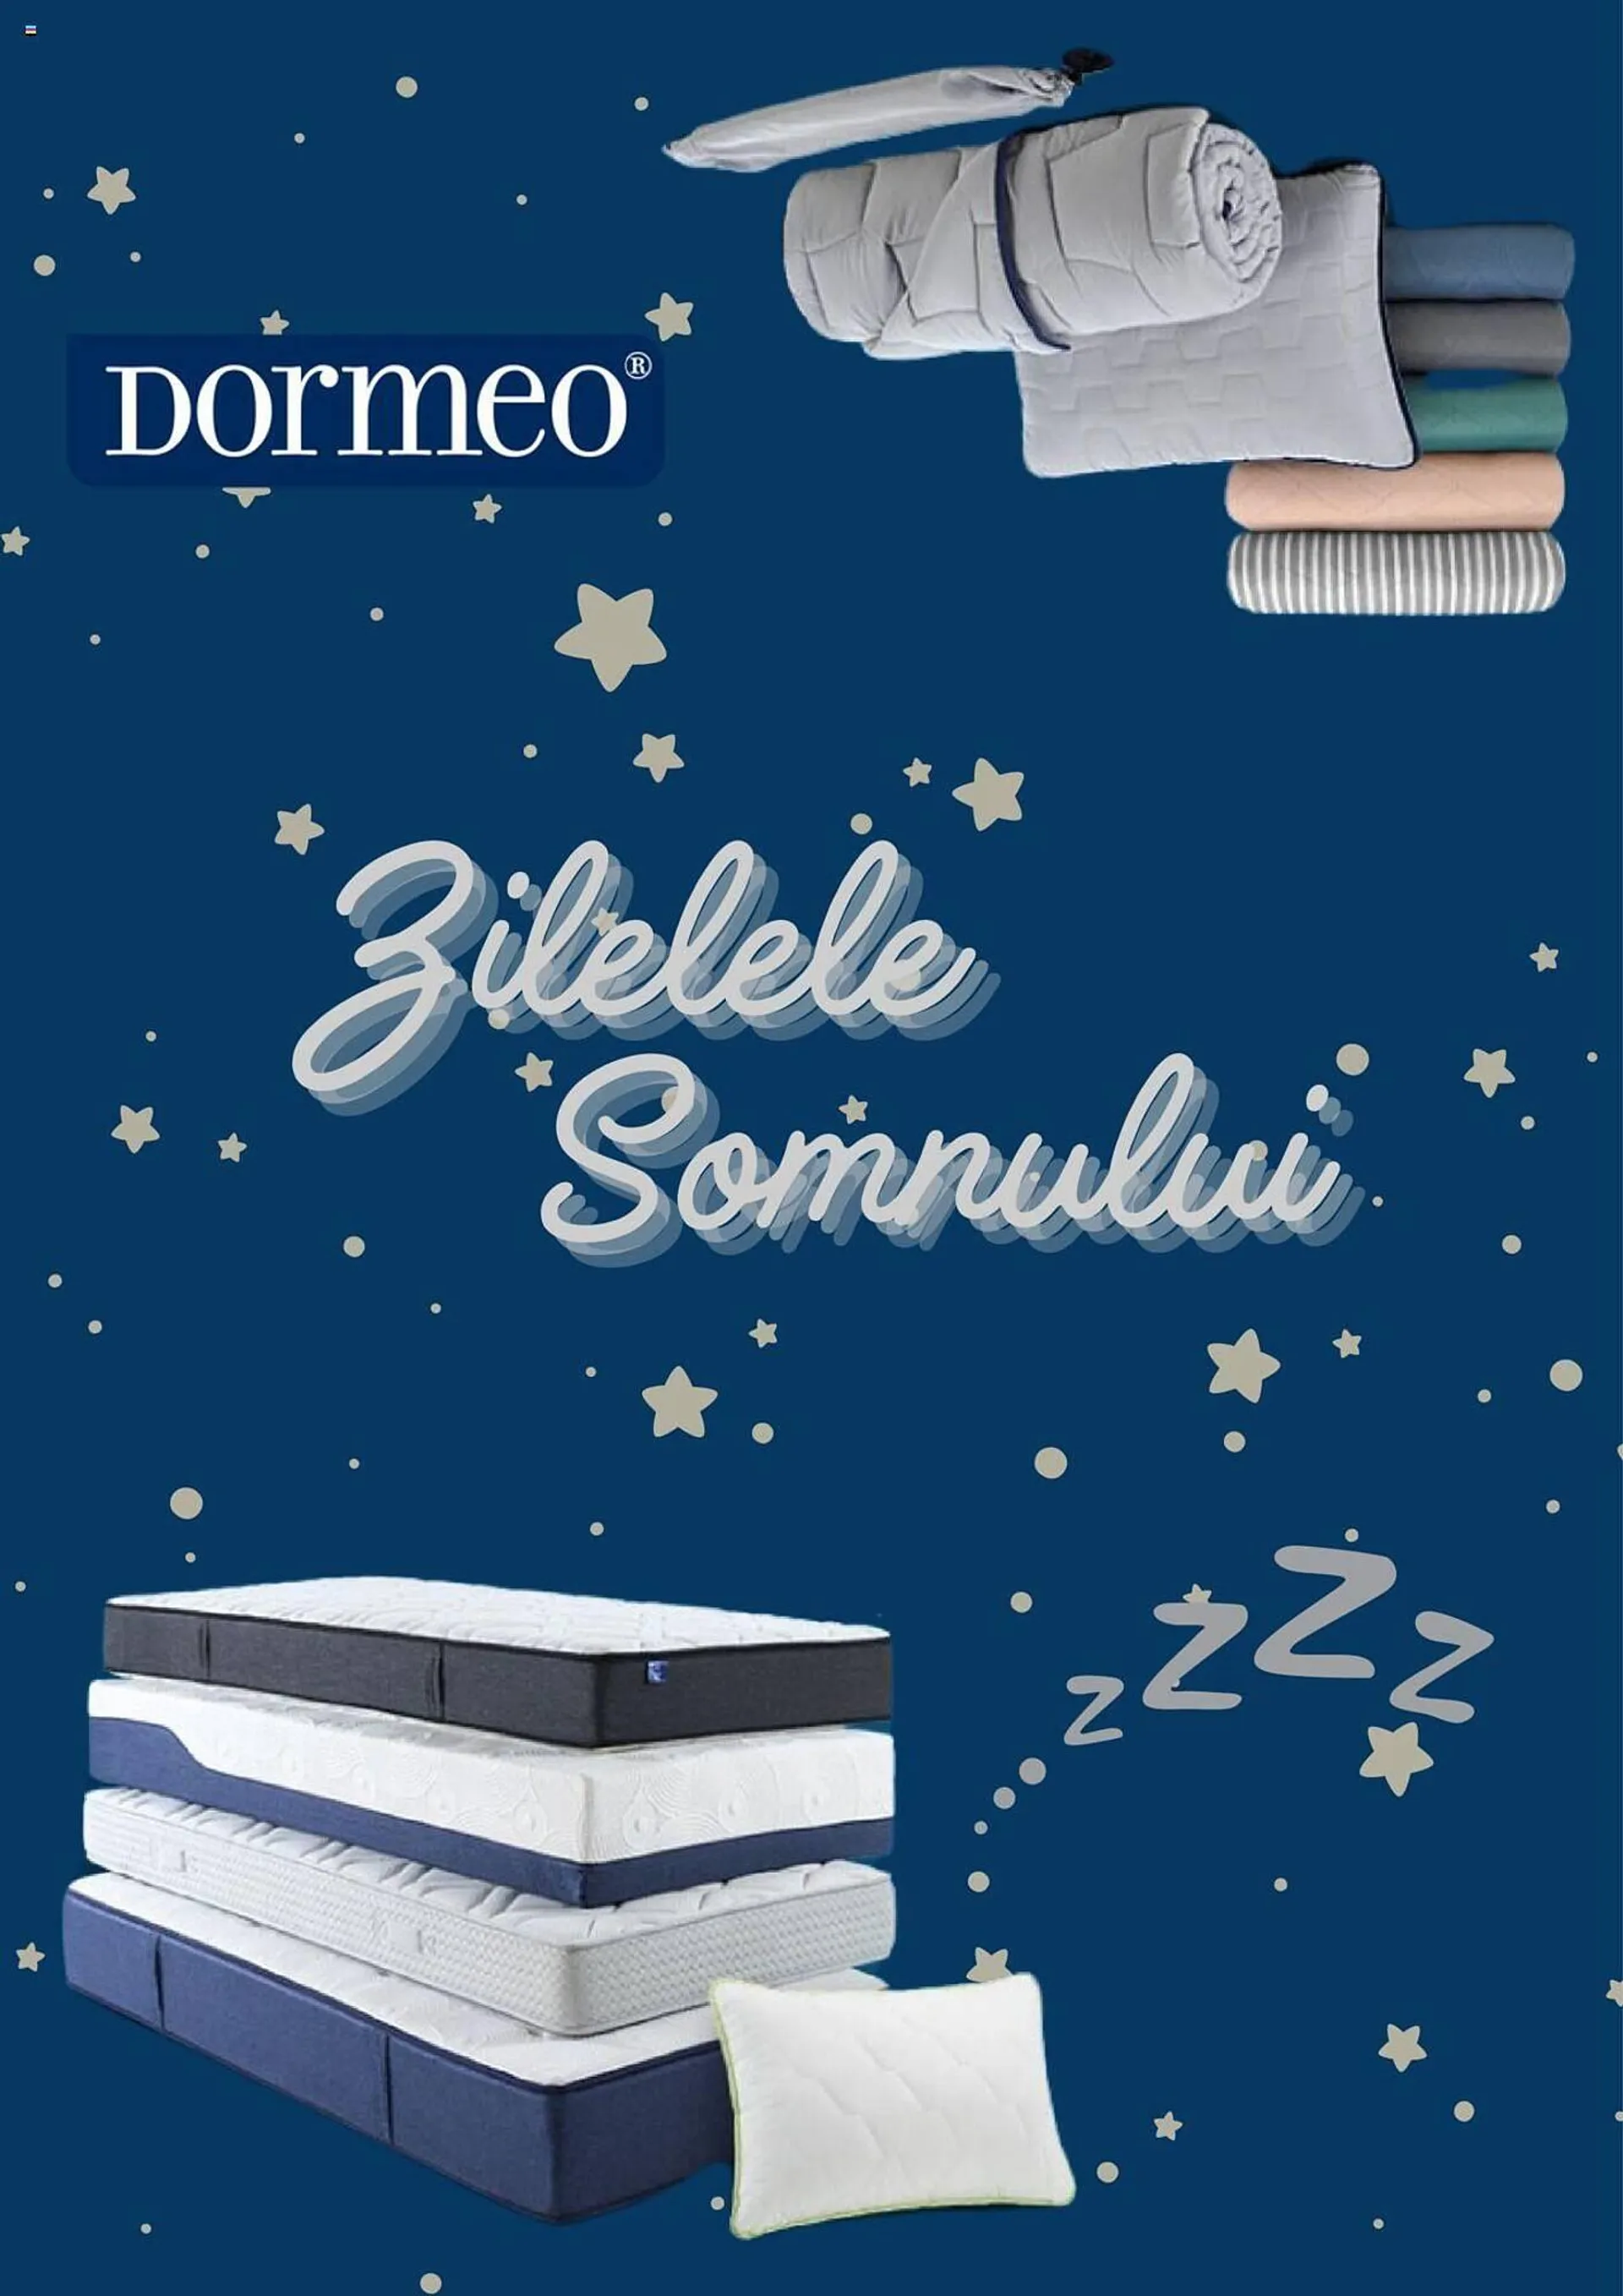 Dormeo catalog - 1